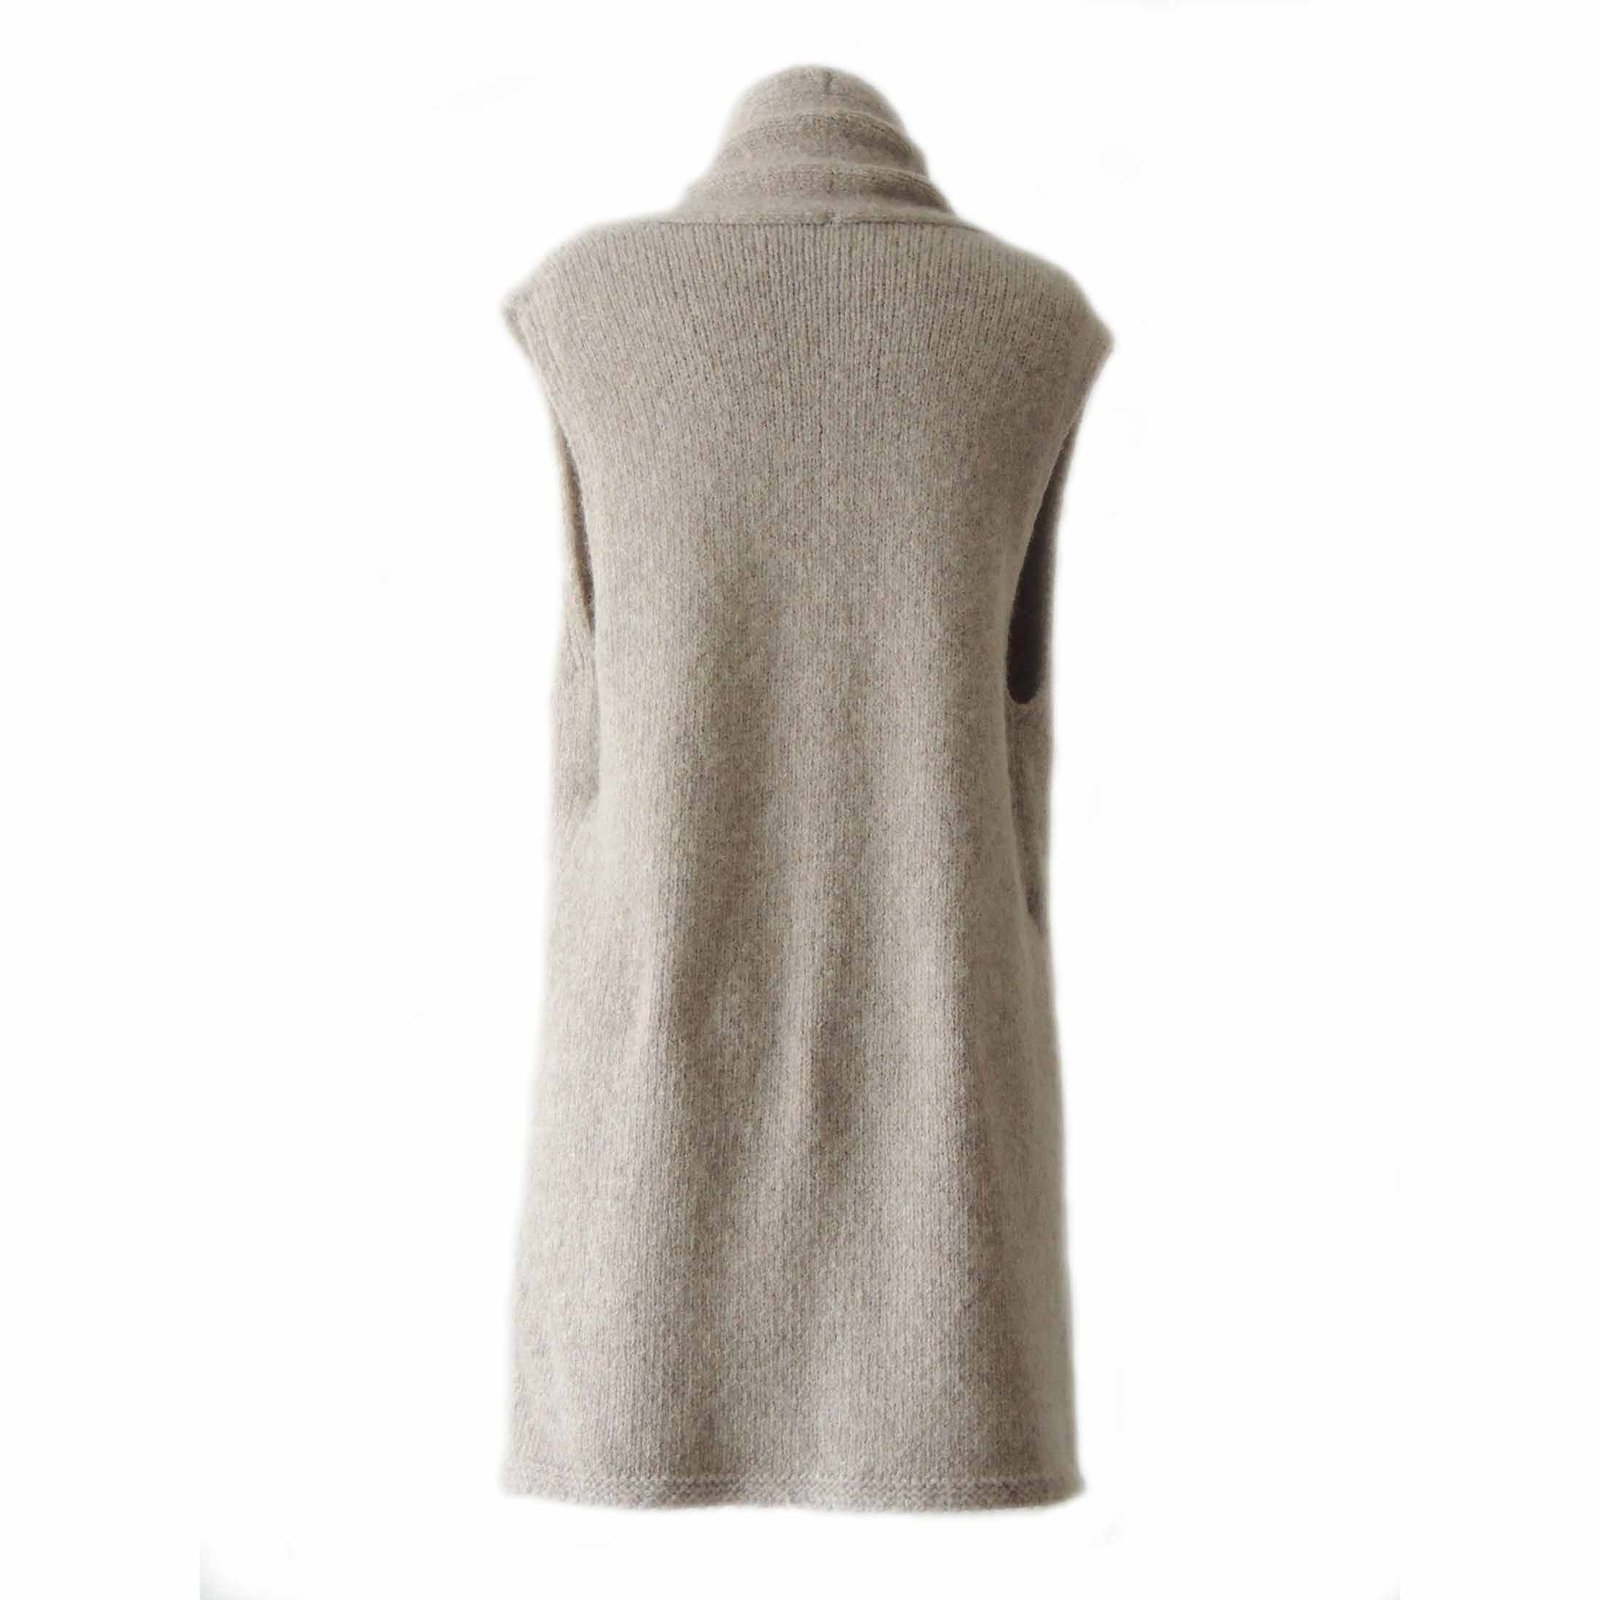 PFL knitwear waistcoat felted alpaca blend